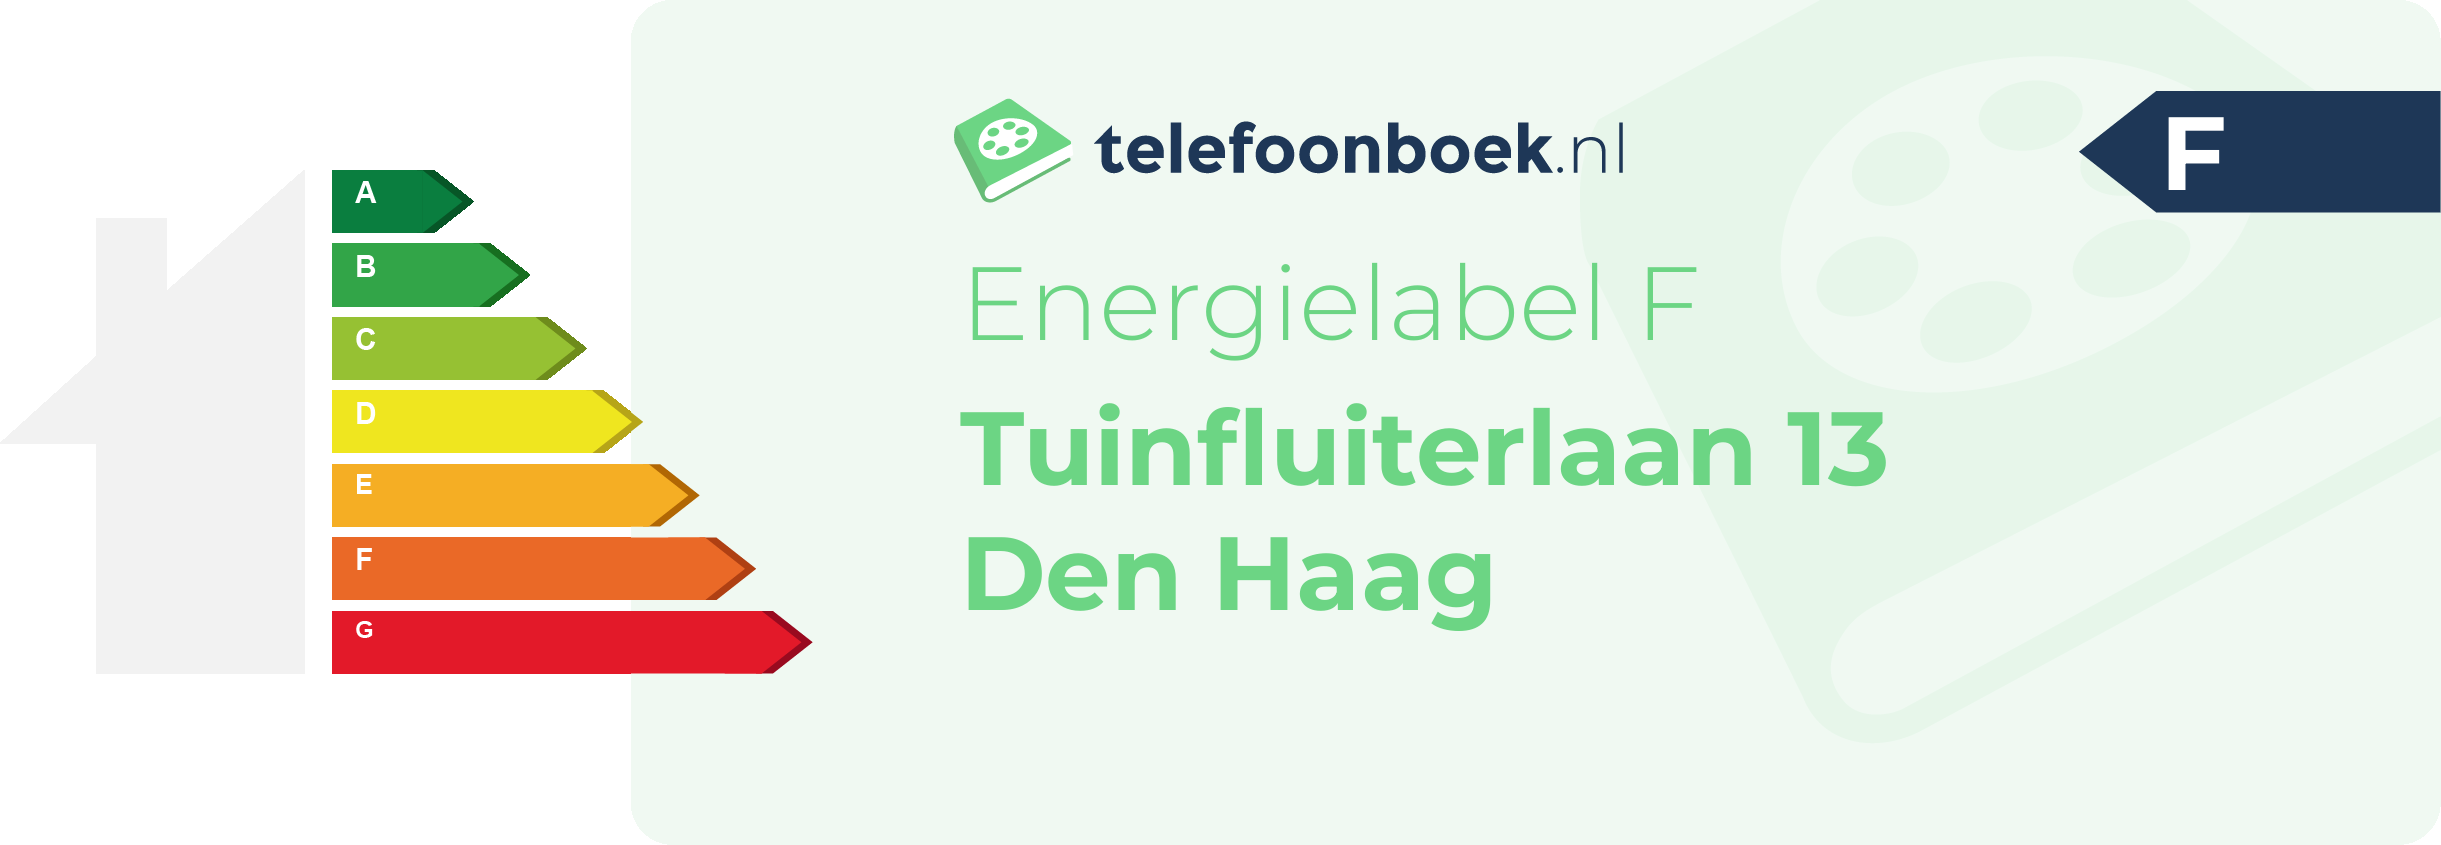 Energielabel Tuinfluiterlaan 13 Den Haag